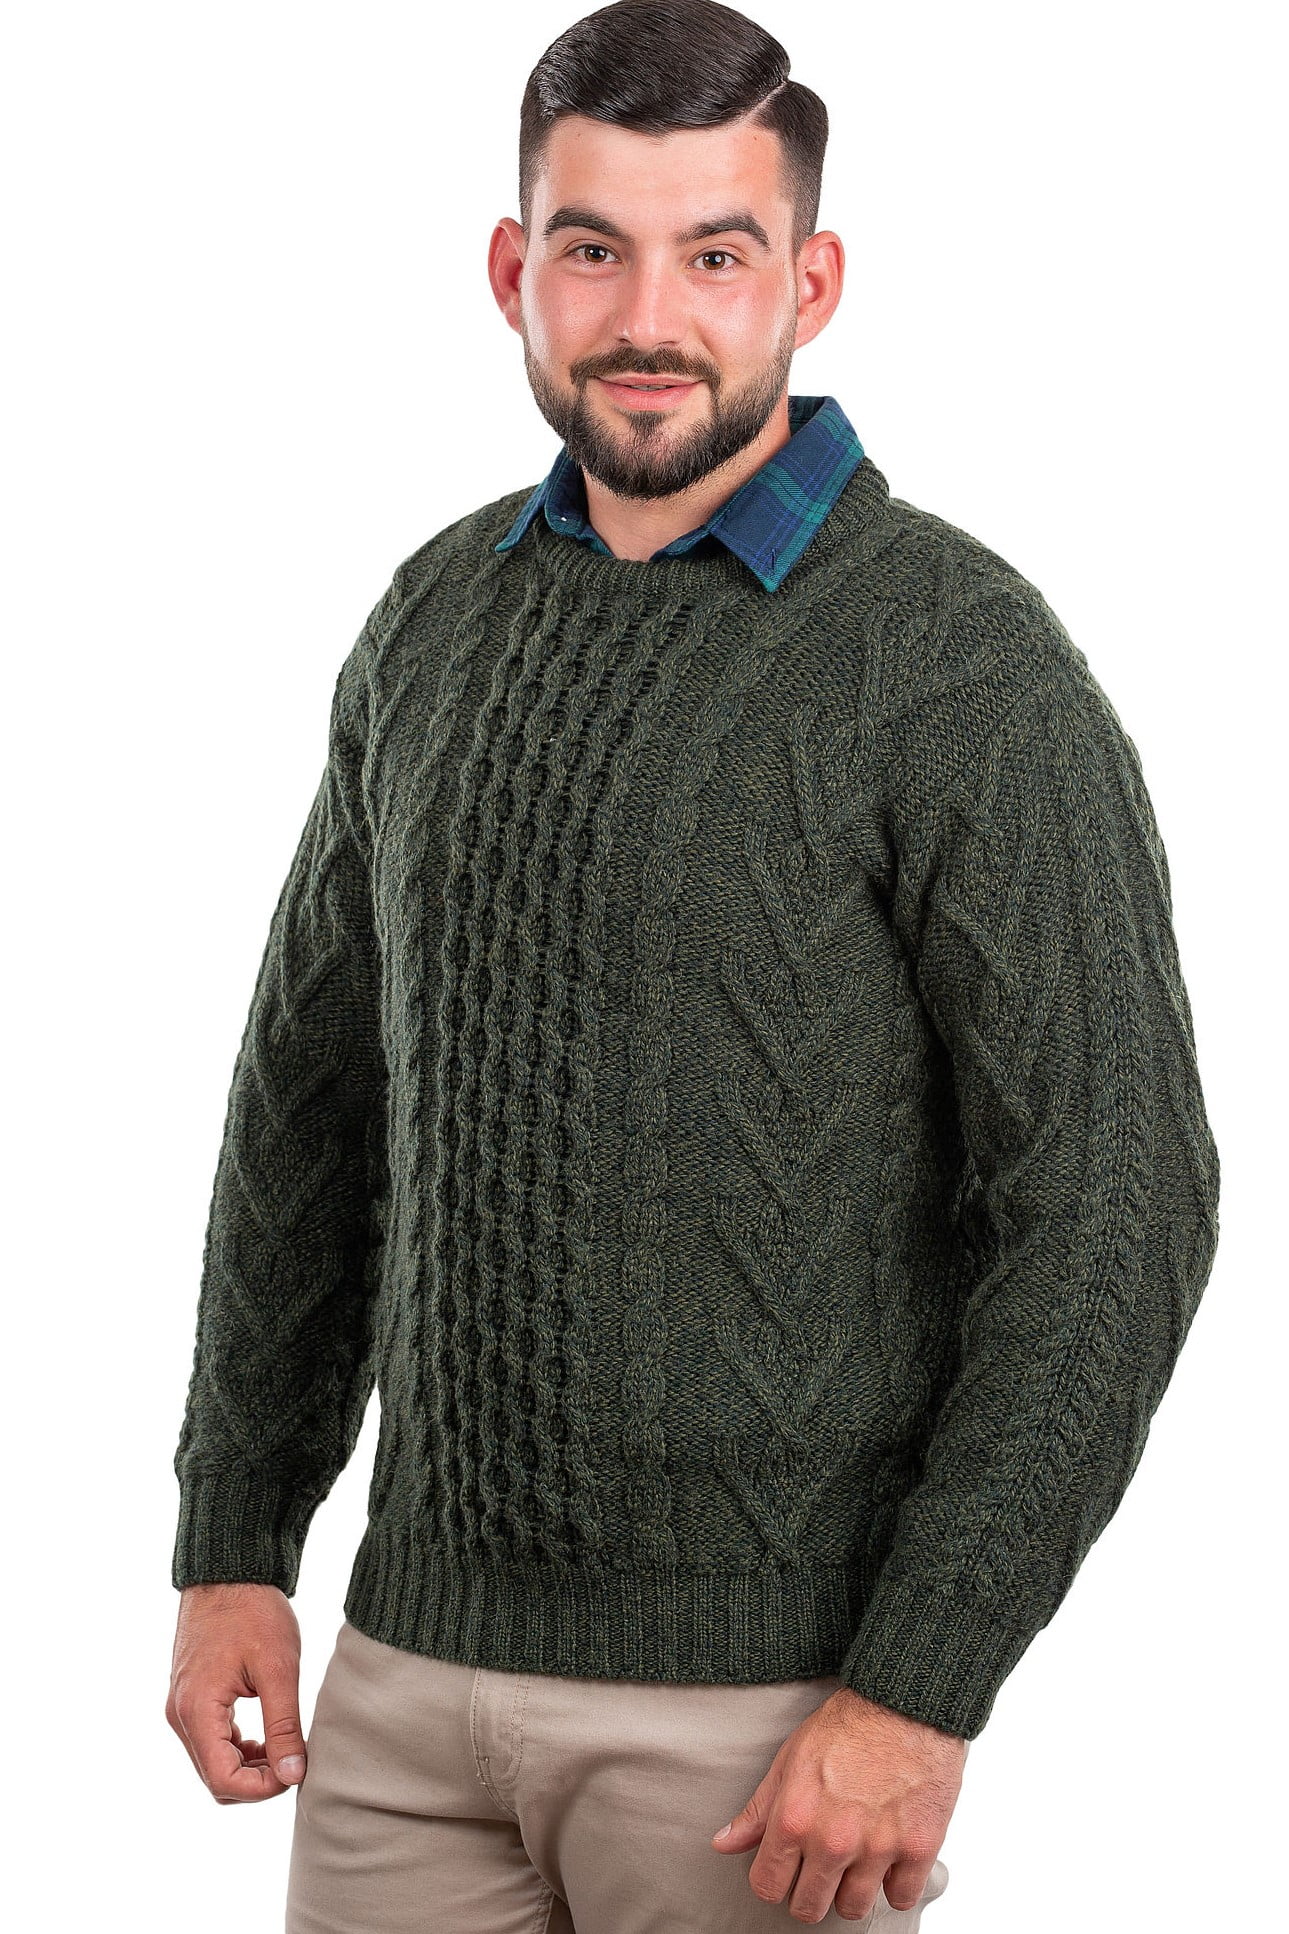 SAOL - Saol Irish Fisherman Sweater 100% Merino Wool Cable Knitted